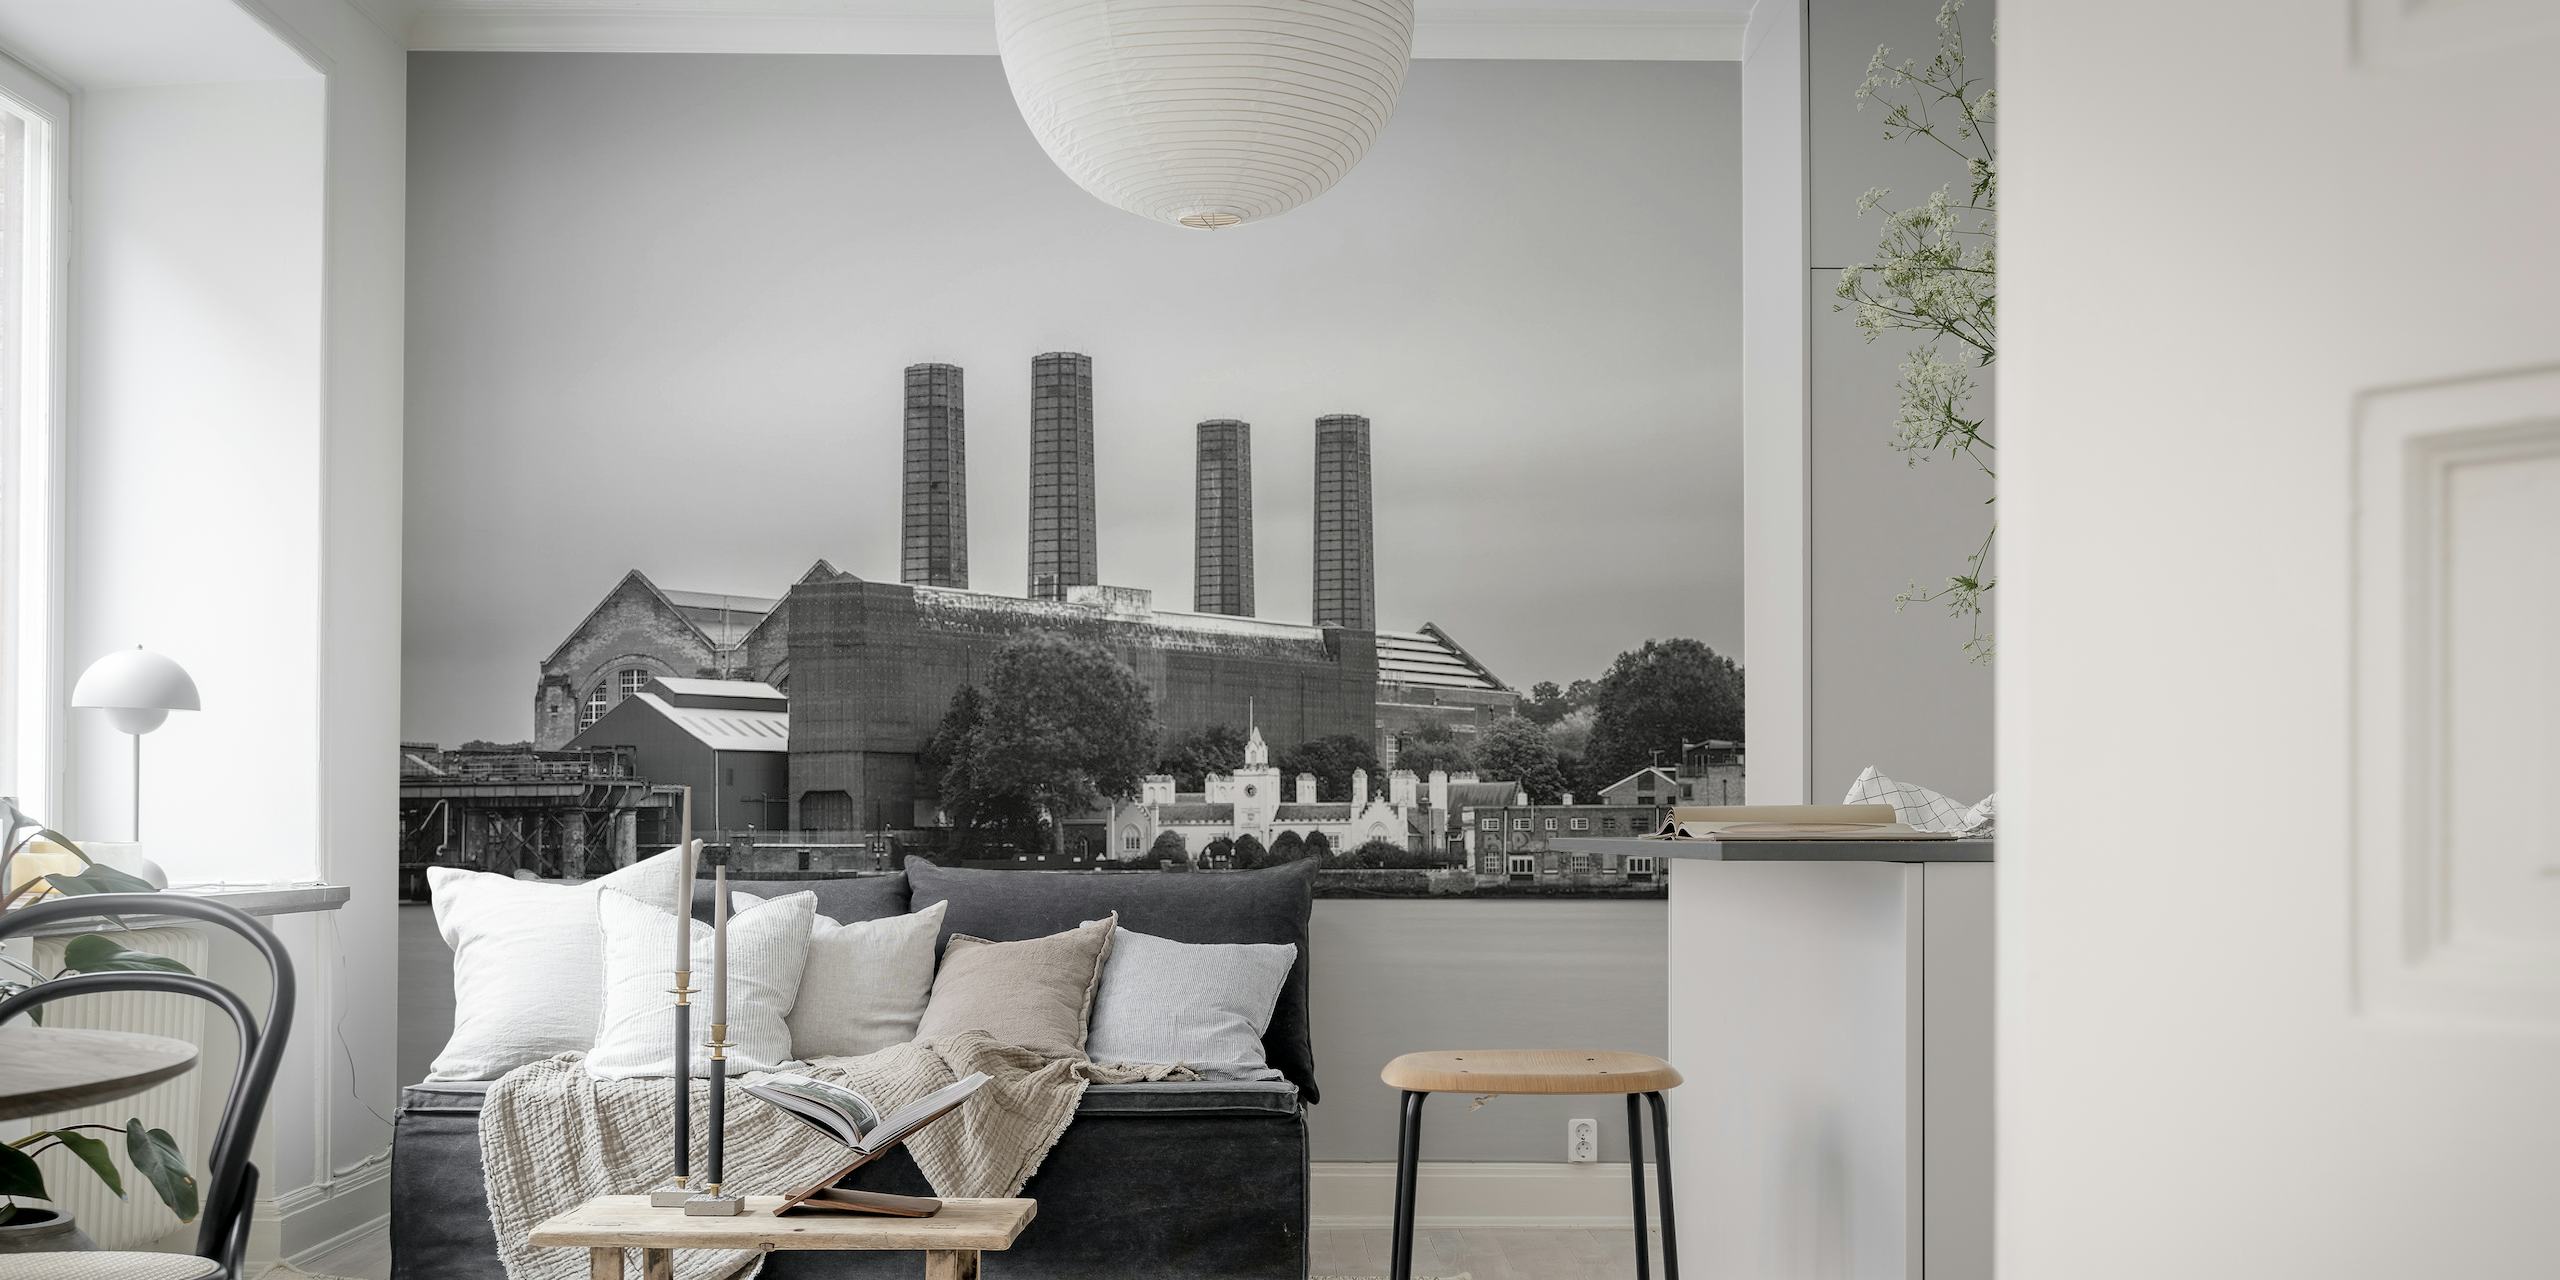 Papier peint noir et blanc de la centrale électrique de Greenwich avec un look industriel classique